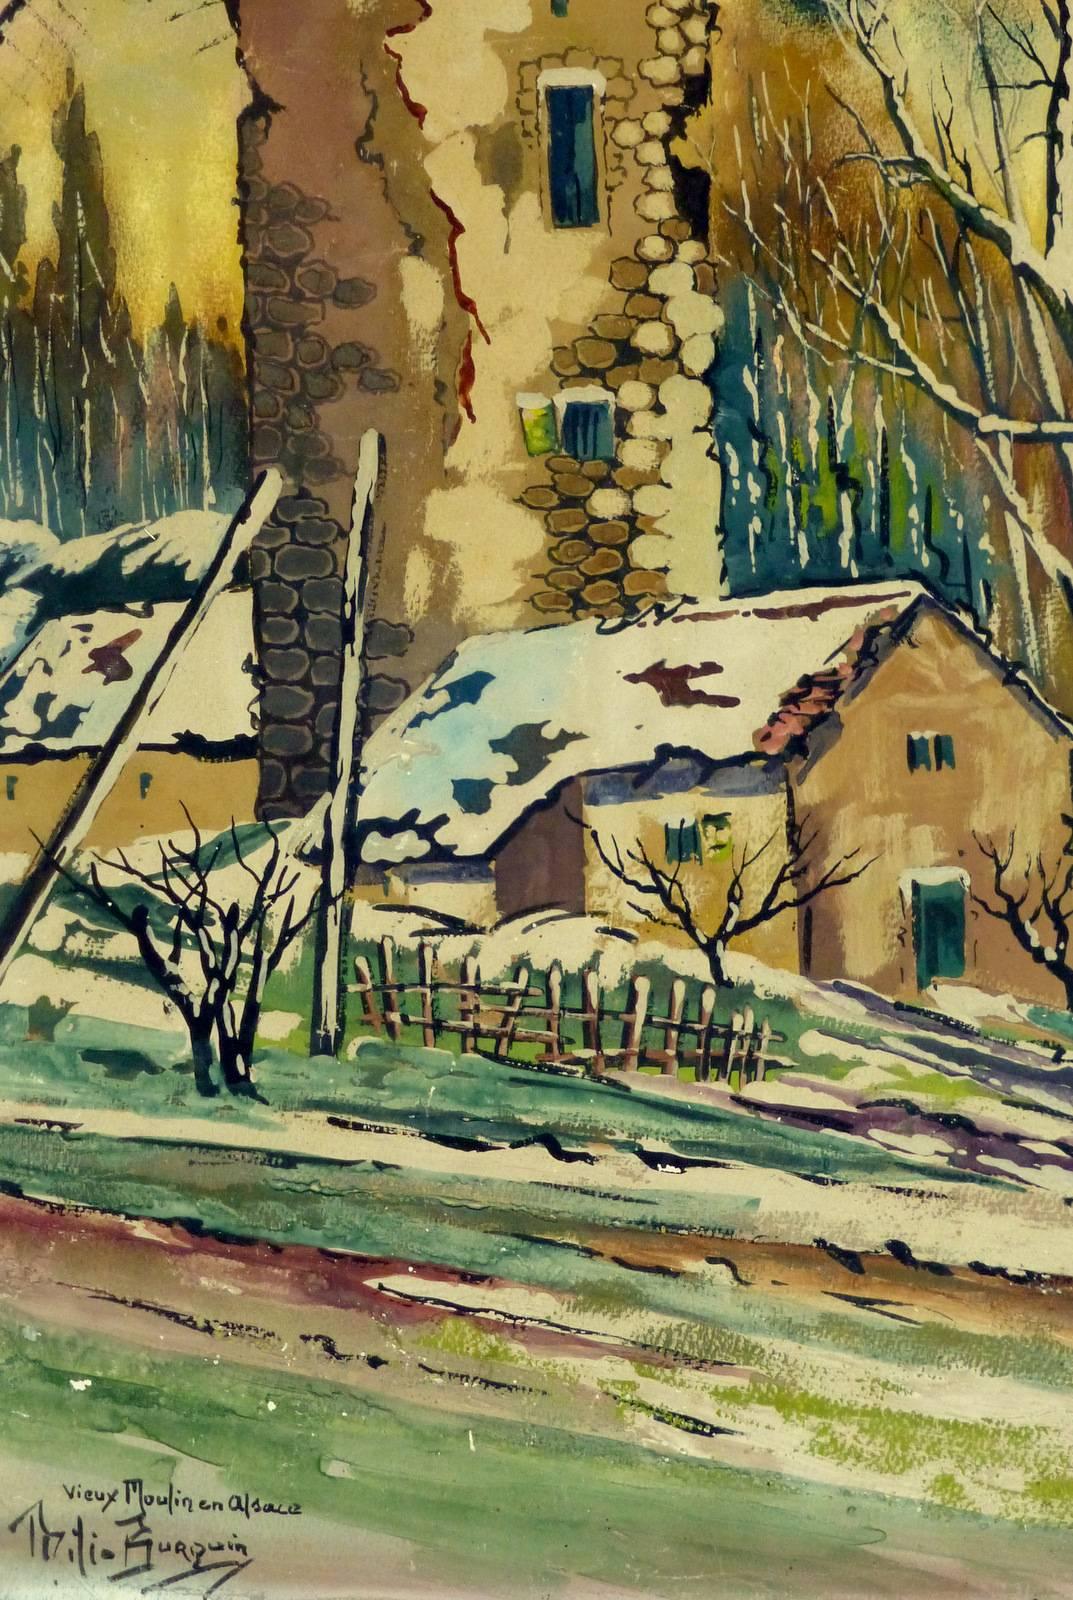 French Watercolor Winter Landscape - Neige Couverte Vieux Moulin en Alsace - Art by Milio Burquin